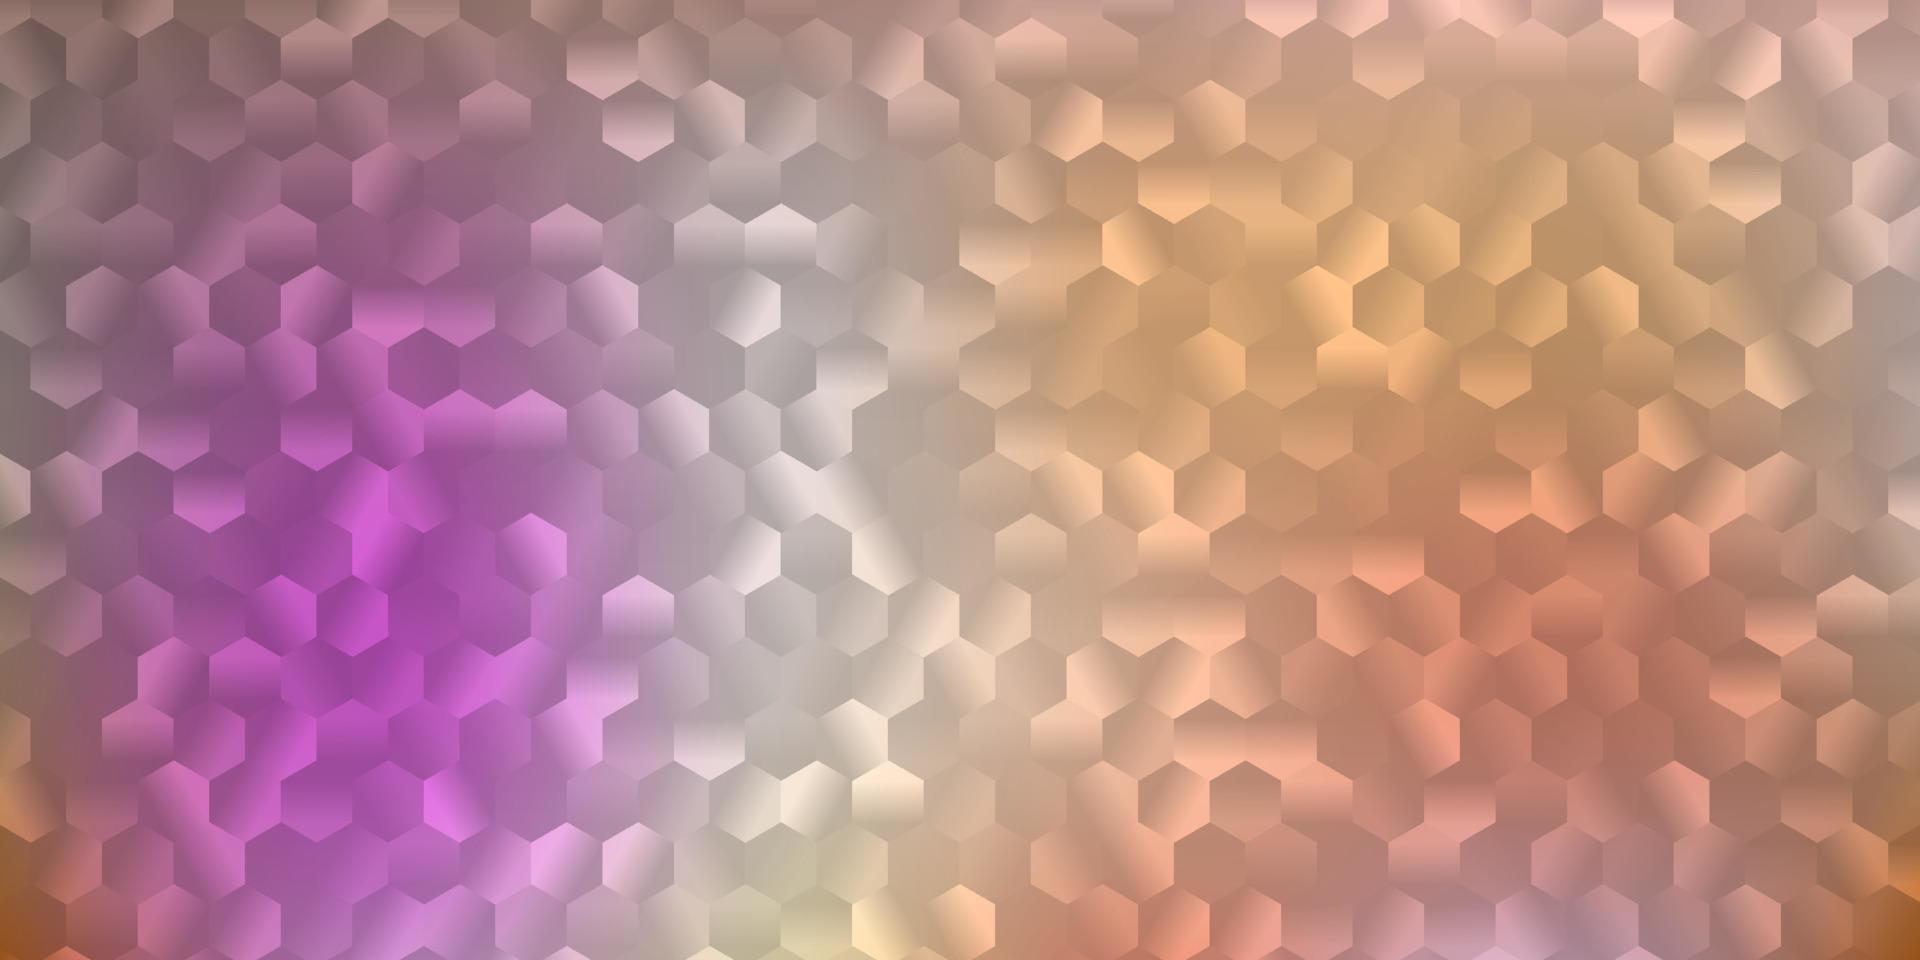 ljusrosa, gul vektorbakgrund med ett parti hexagoner. vektor